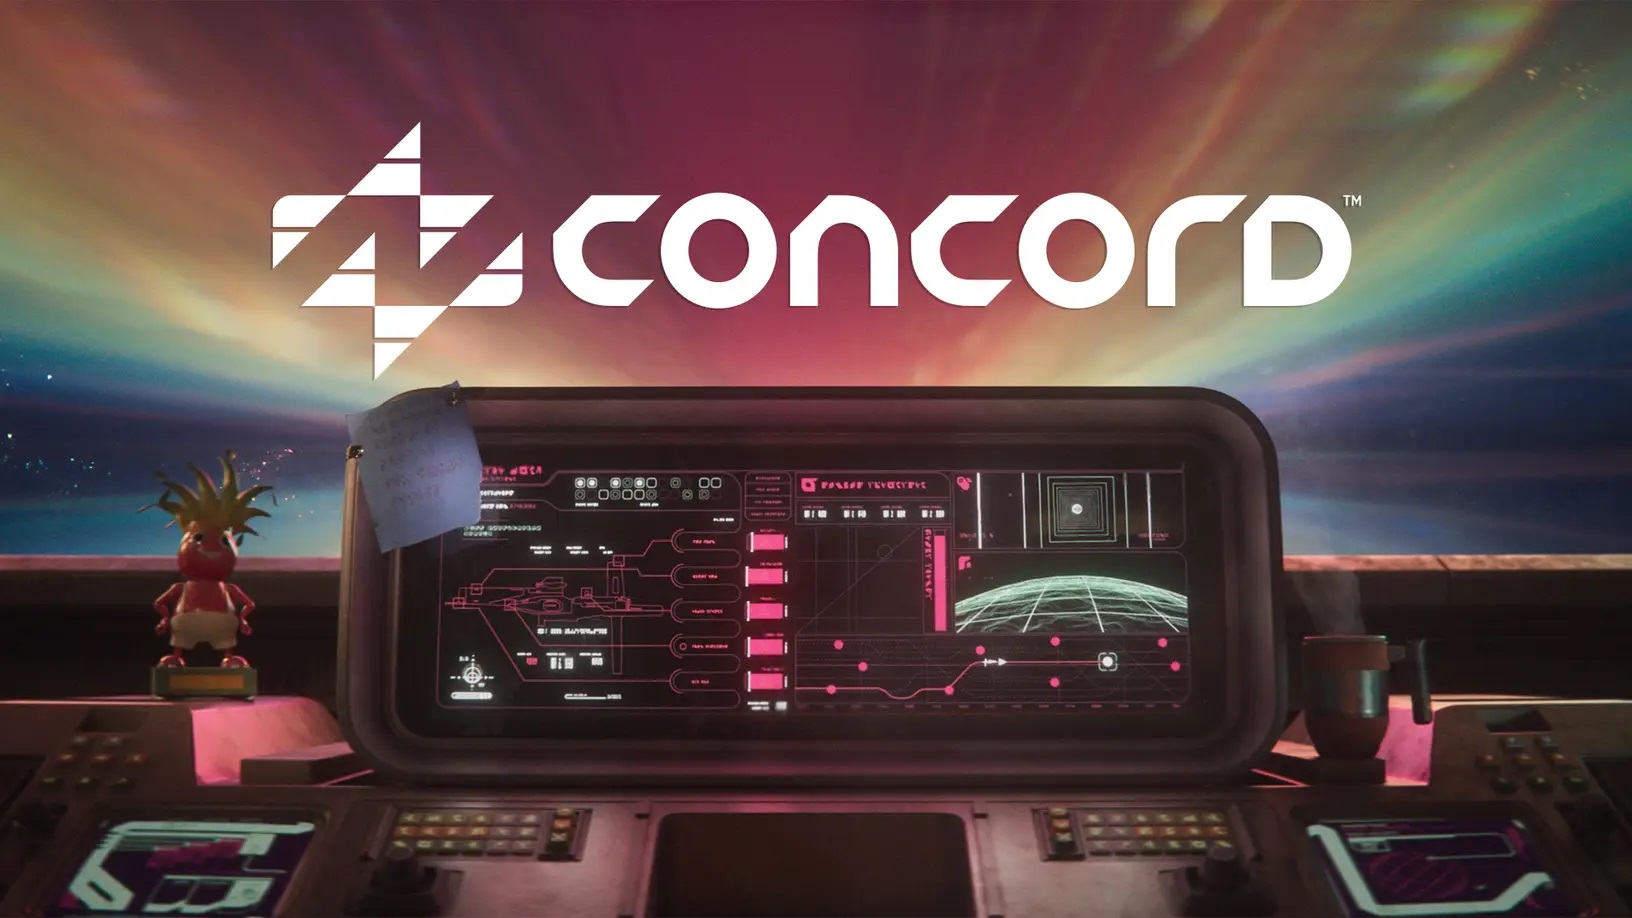 Sony plaagt met de onmiddellijke onthulling van Concord multiplayerspel beeldmateriaal